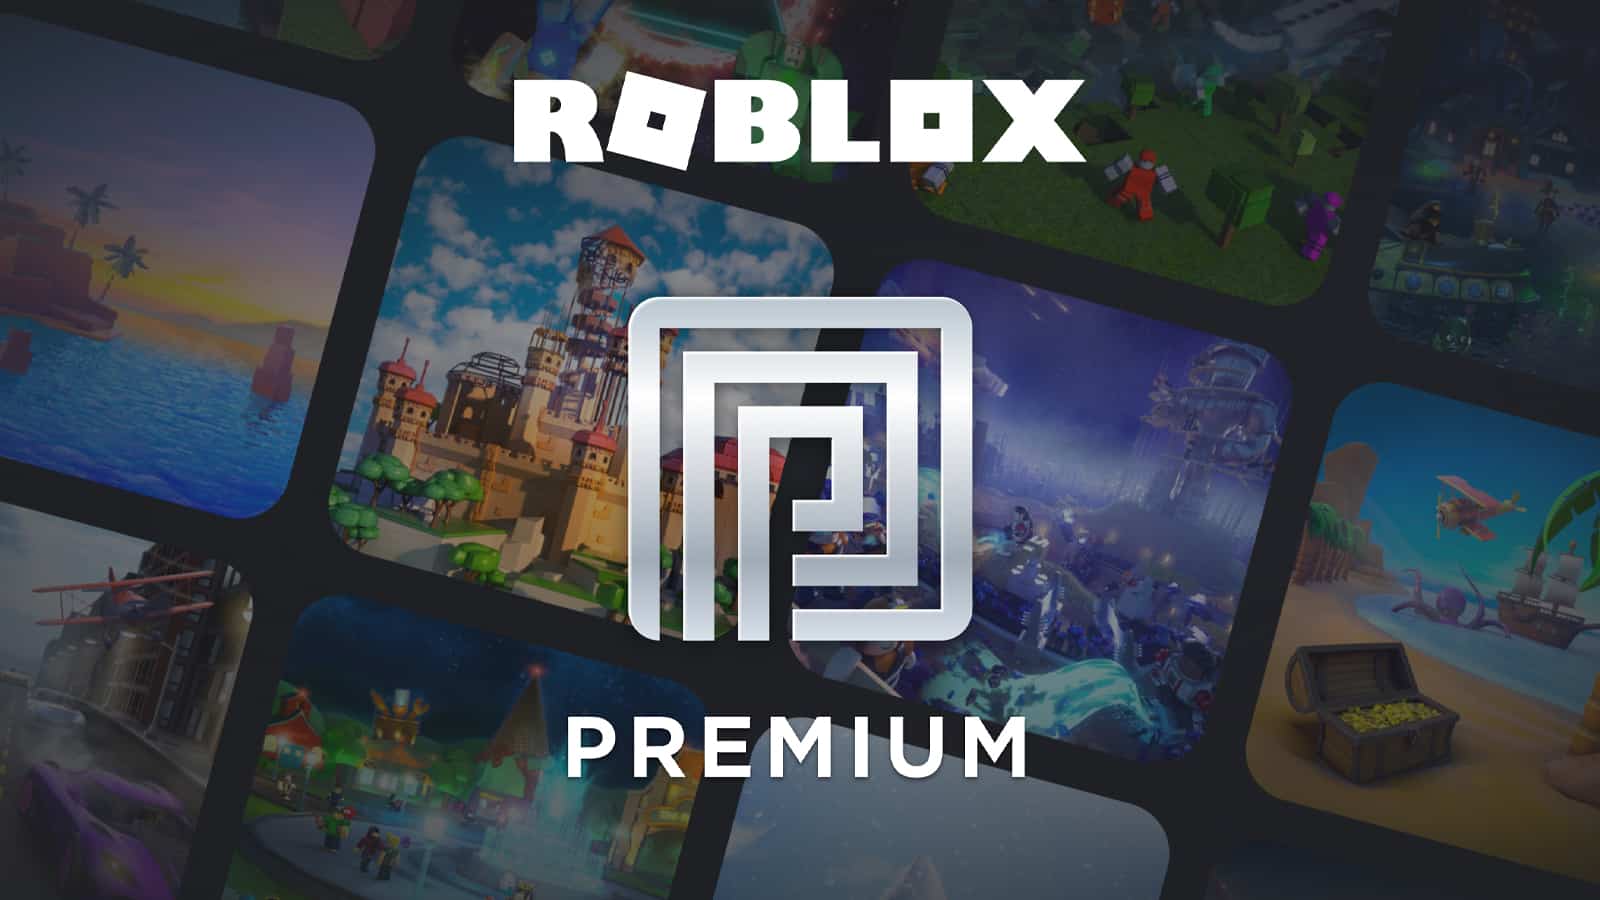 Roblox Premium logo with a dark background